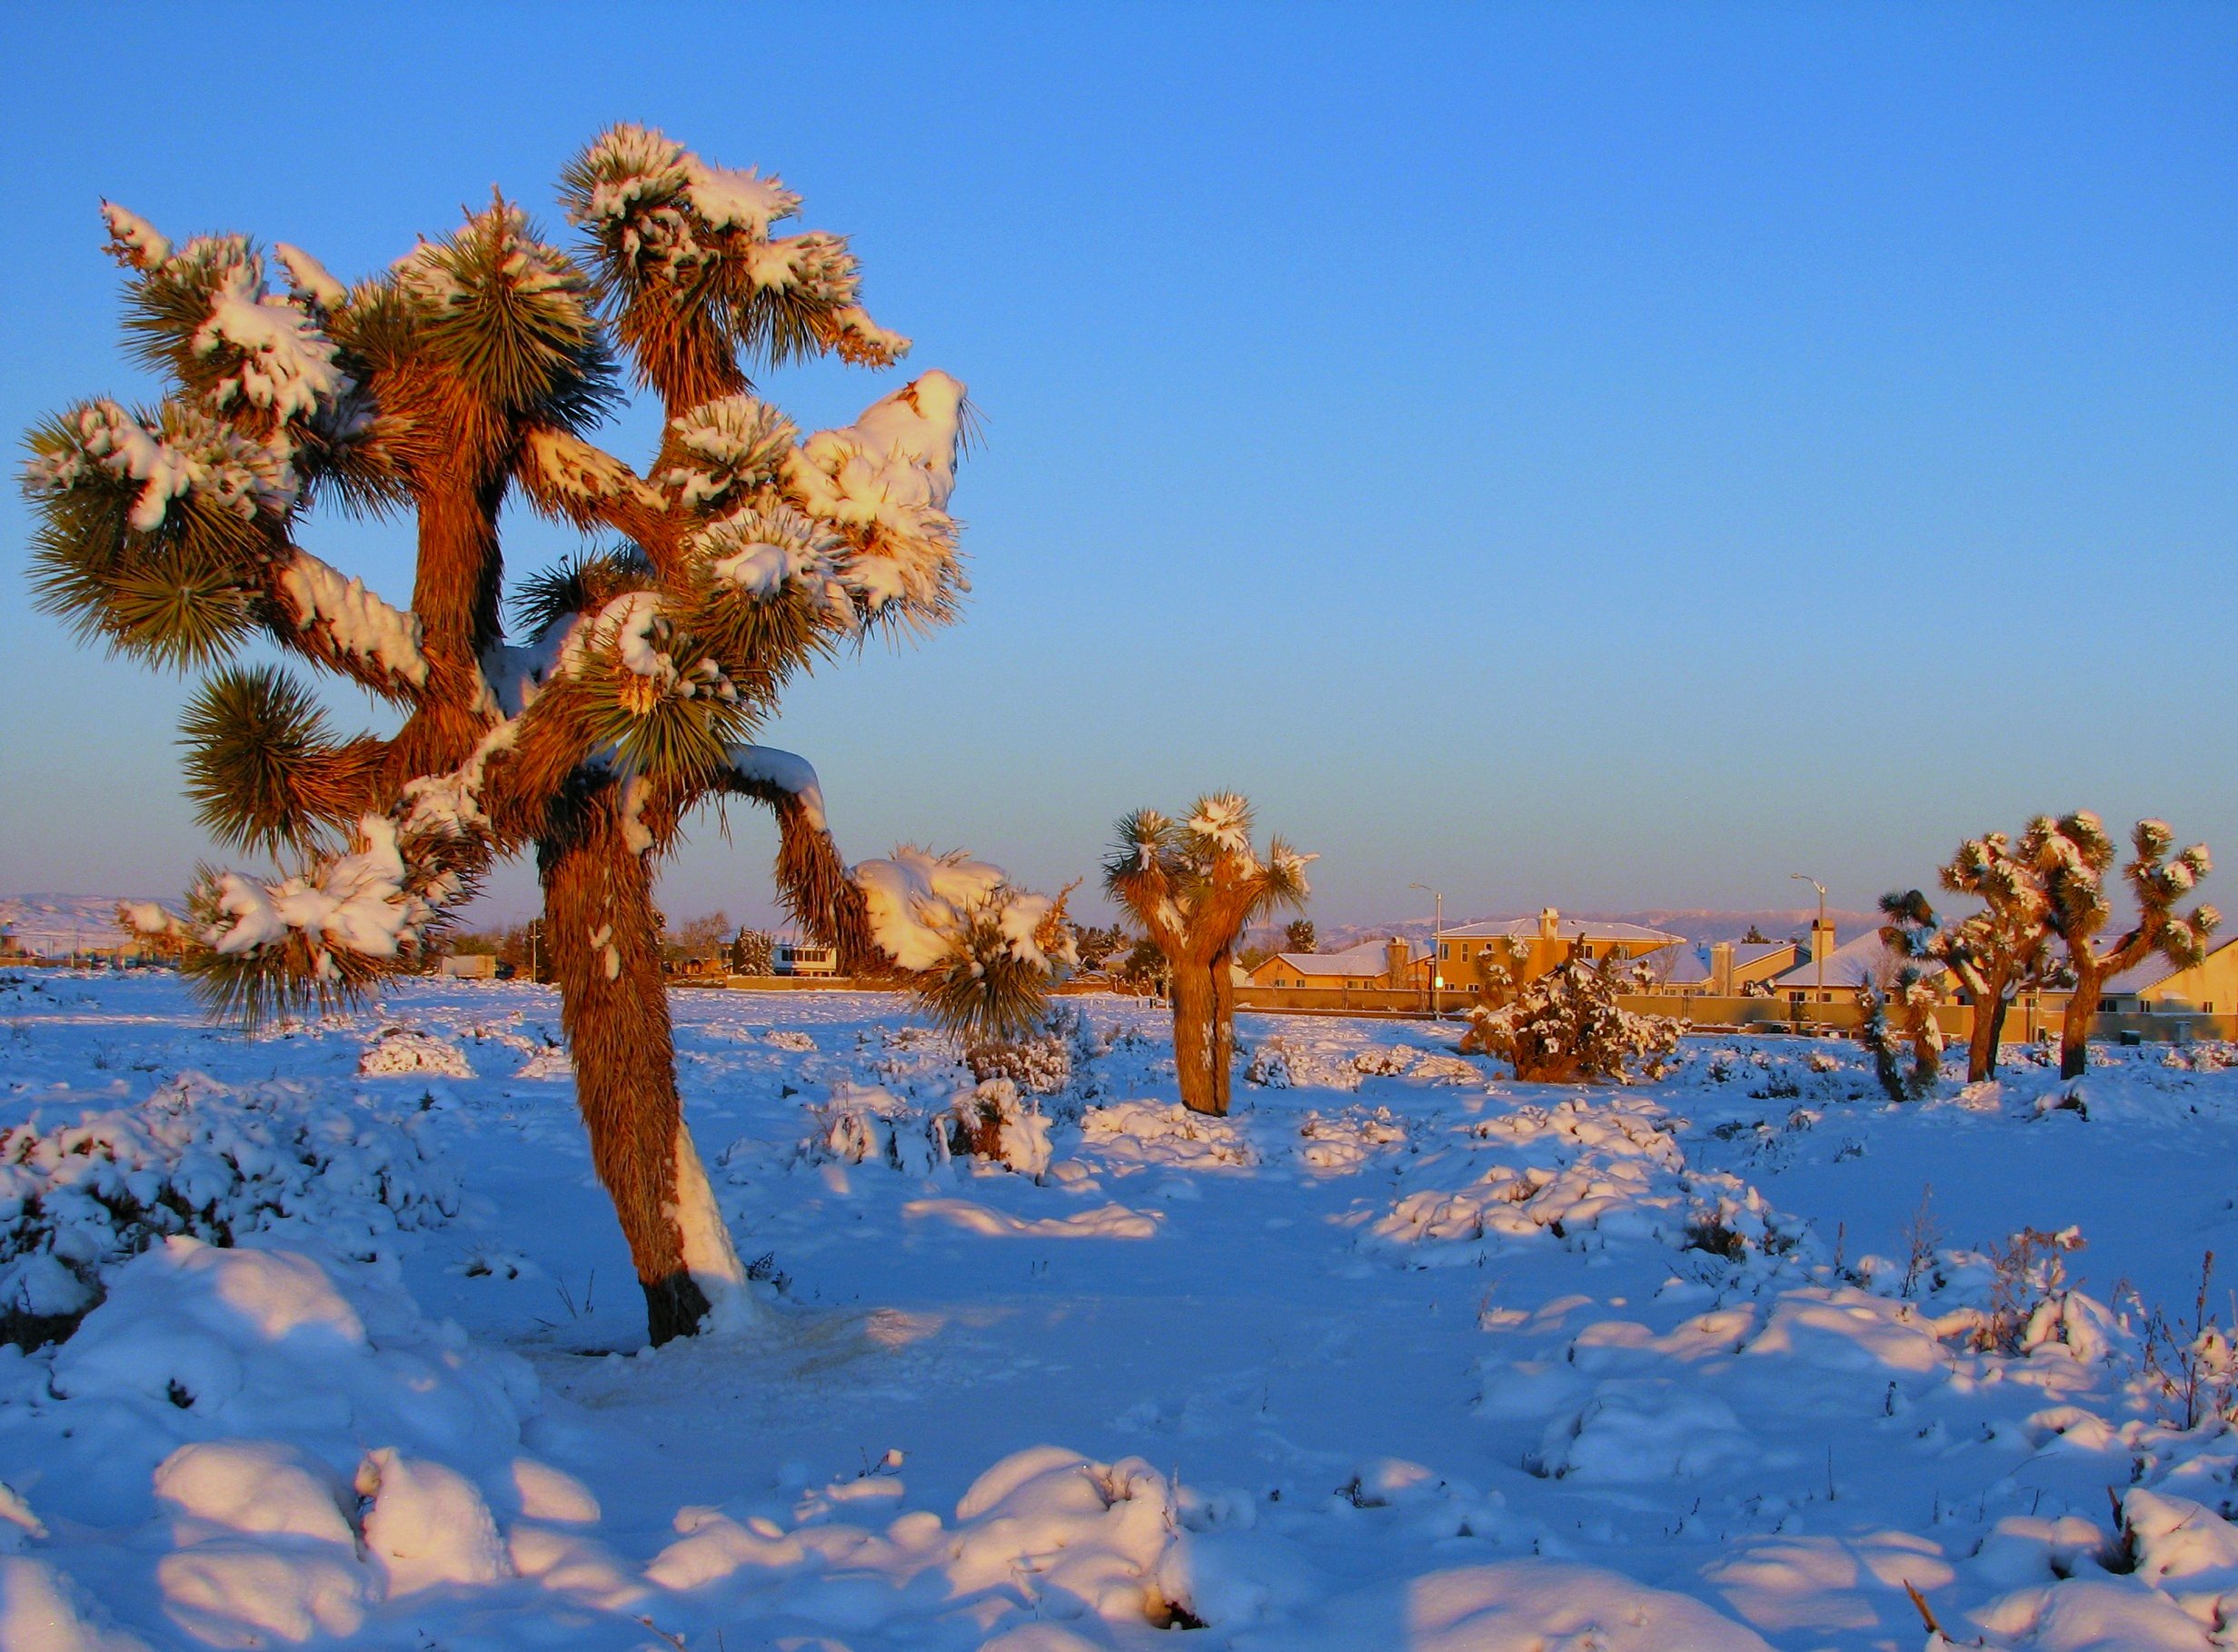 File:The Mojave Desert in Winter (3117873177).jpg - Wikimedia Commons